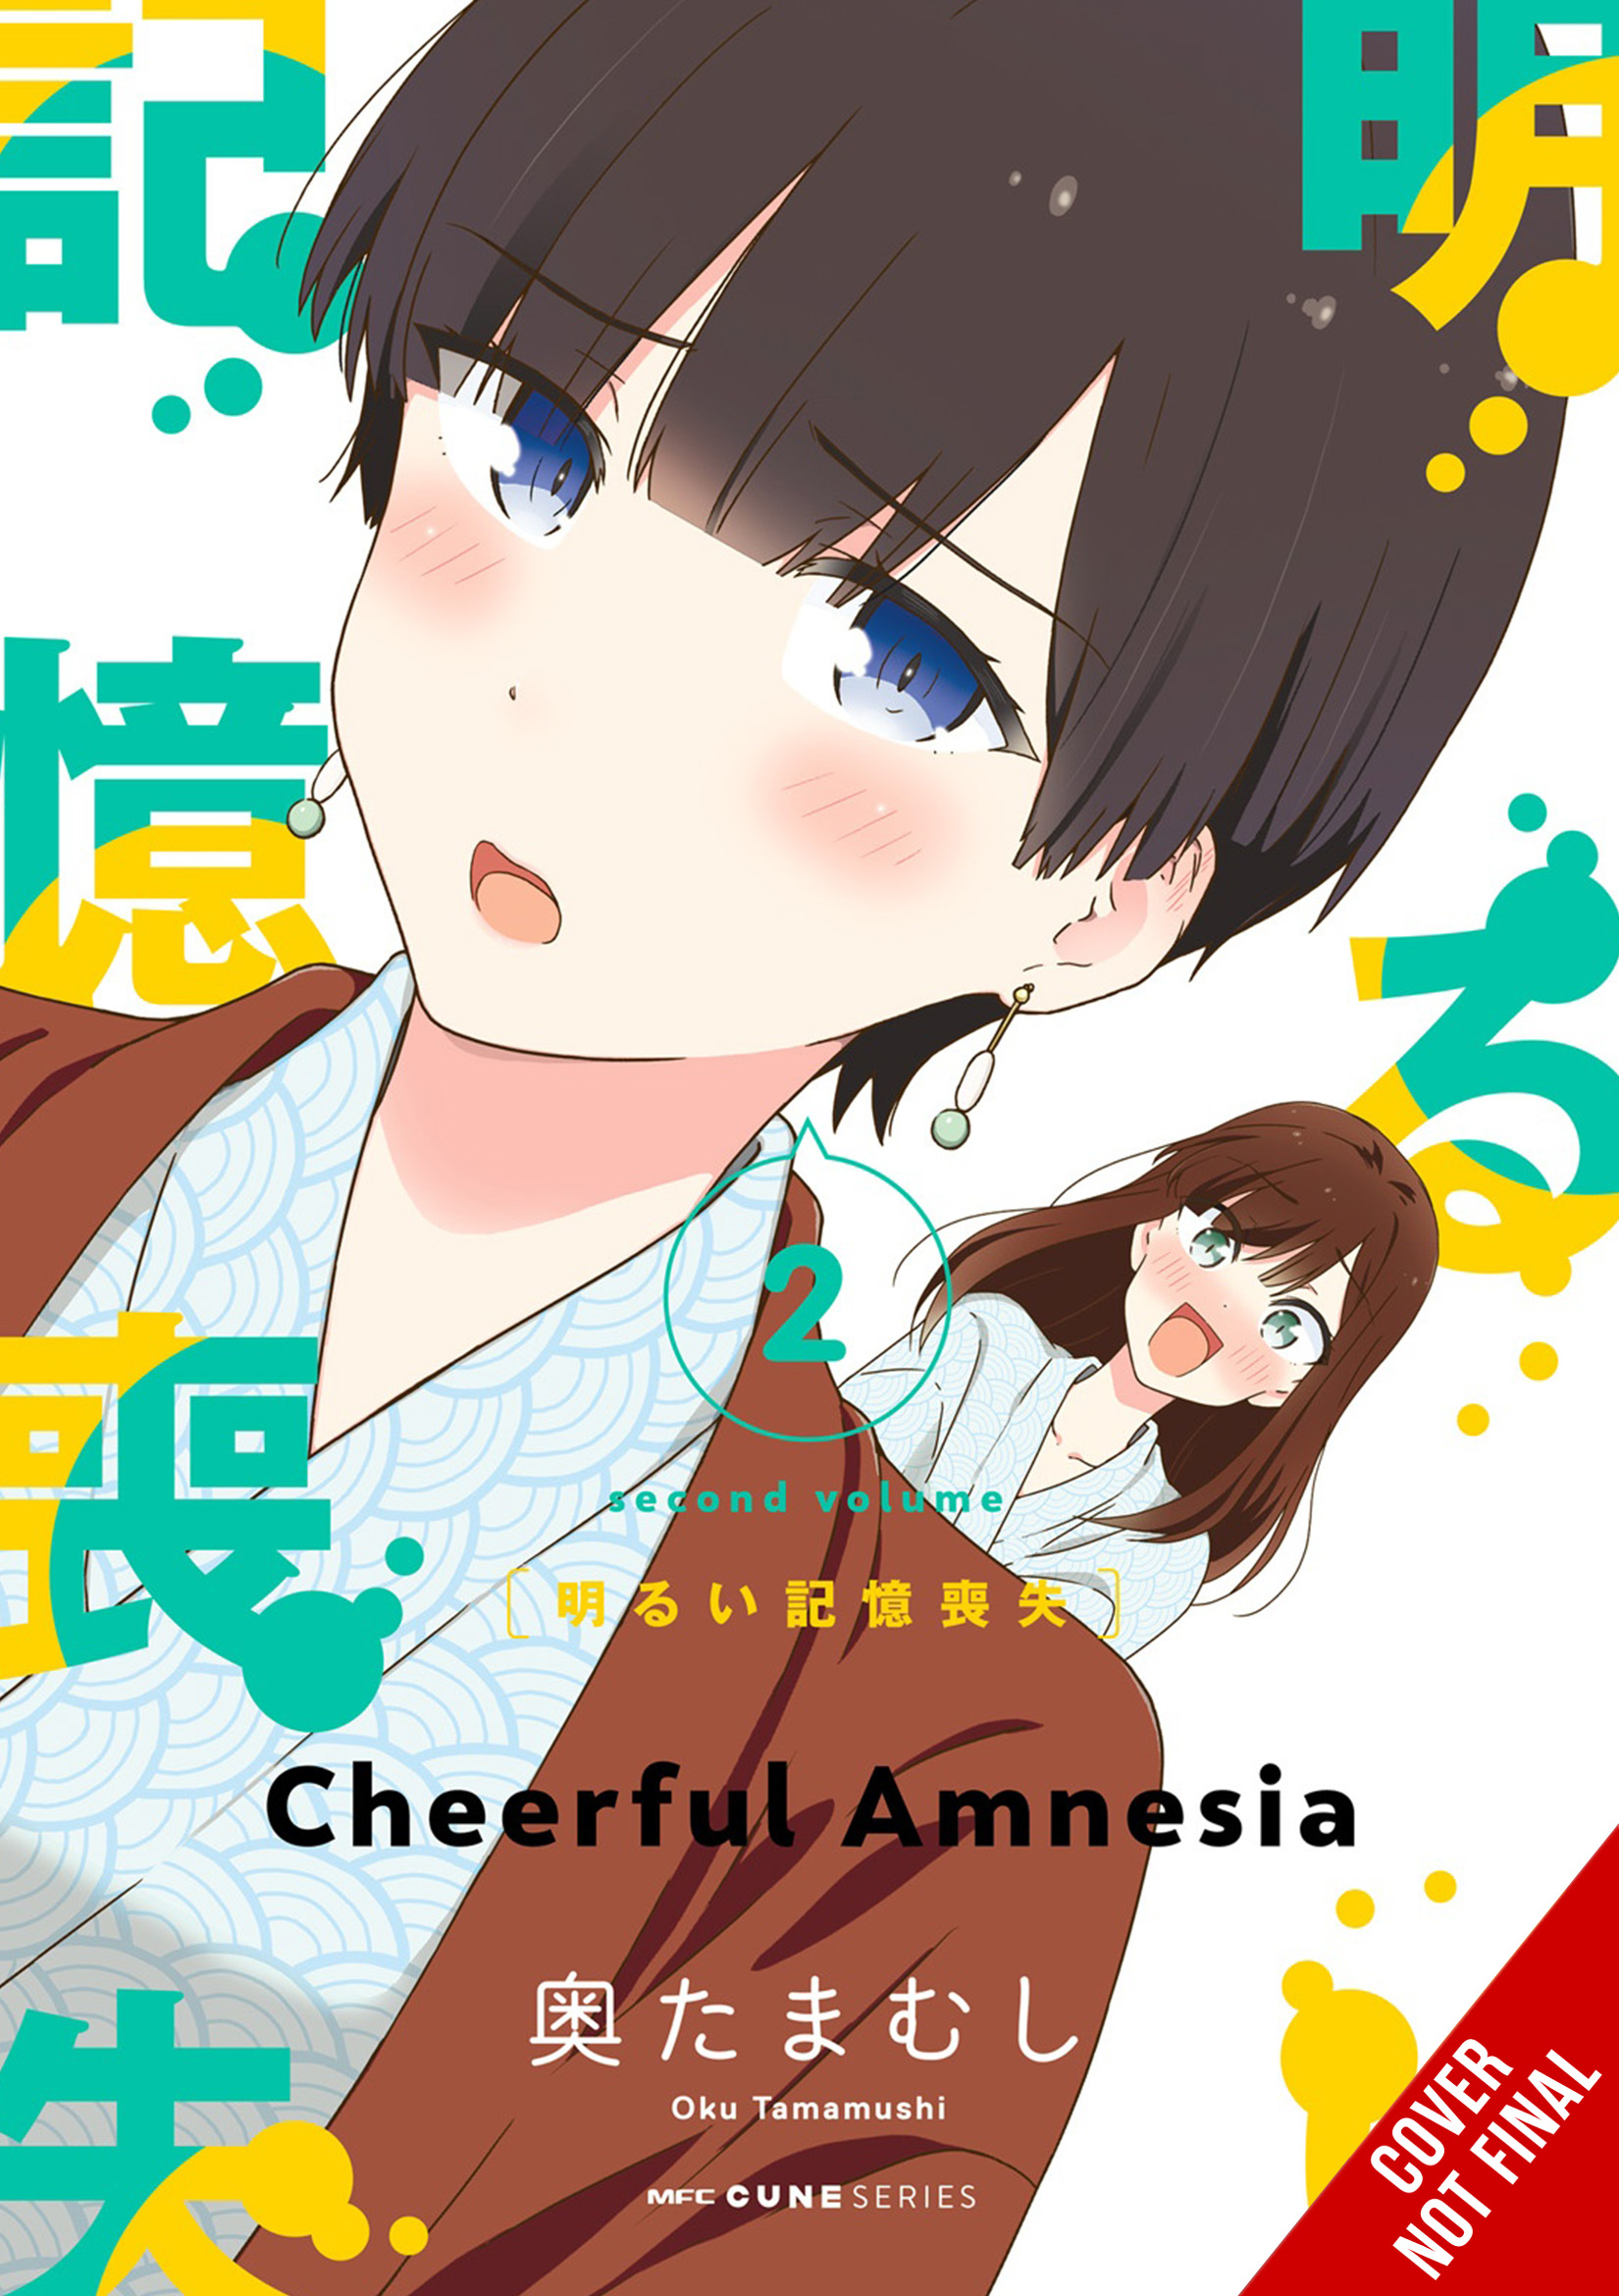 Cheerful Amnesia Manga Volume 2 (Mature)